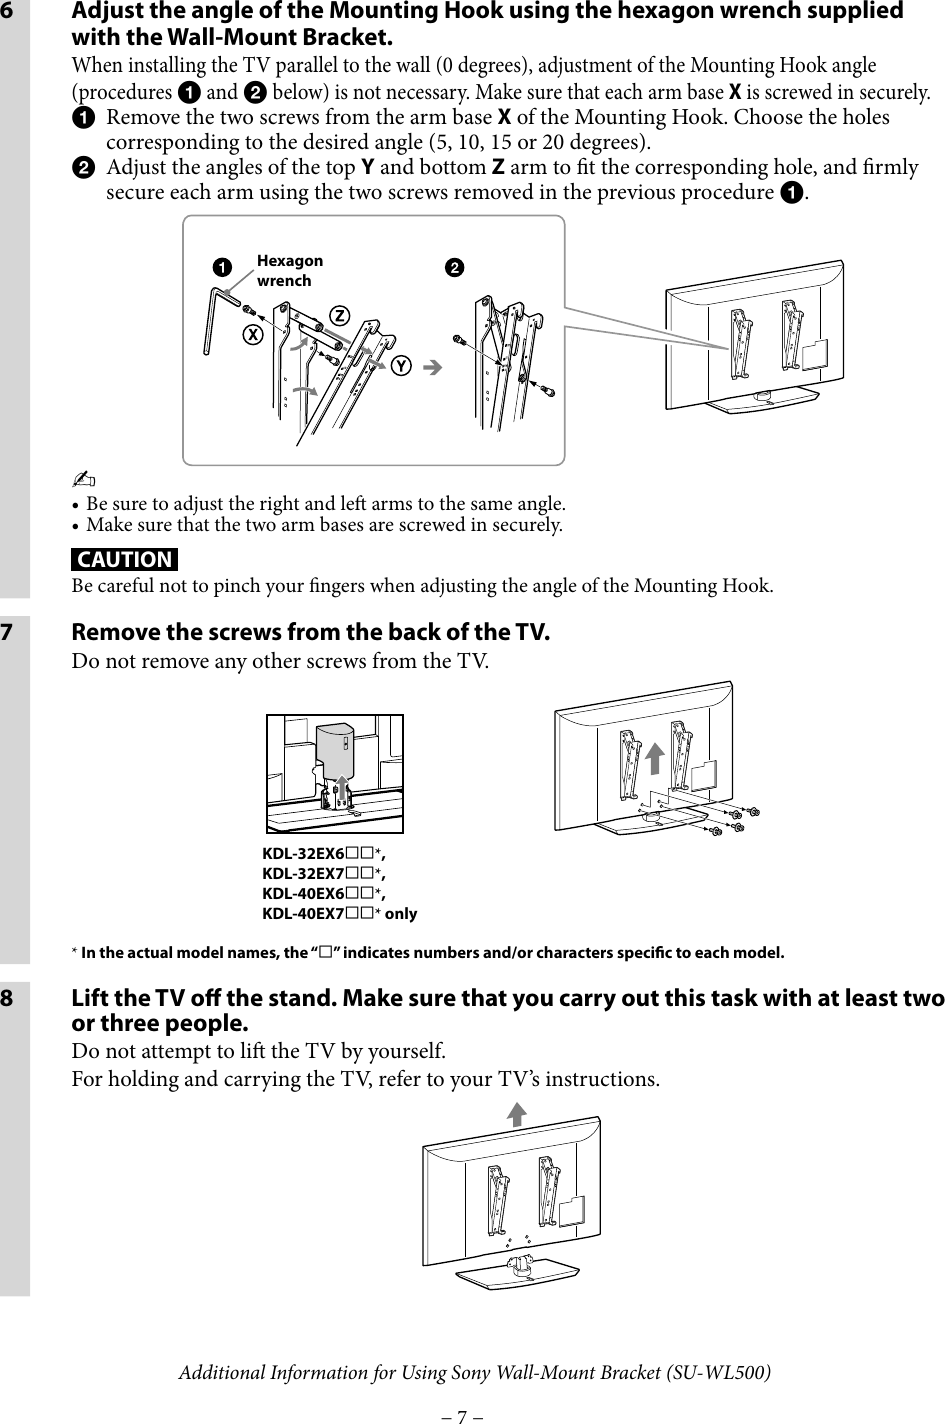 Page 7 of 8 - Sony Sony-Wall-Mount-Bracket-Su-Wl500-Users-Manual- SU-WL500  Sony-wall-mount-bracket-su-wl500-users-manual